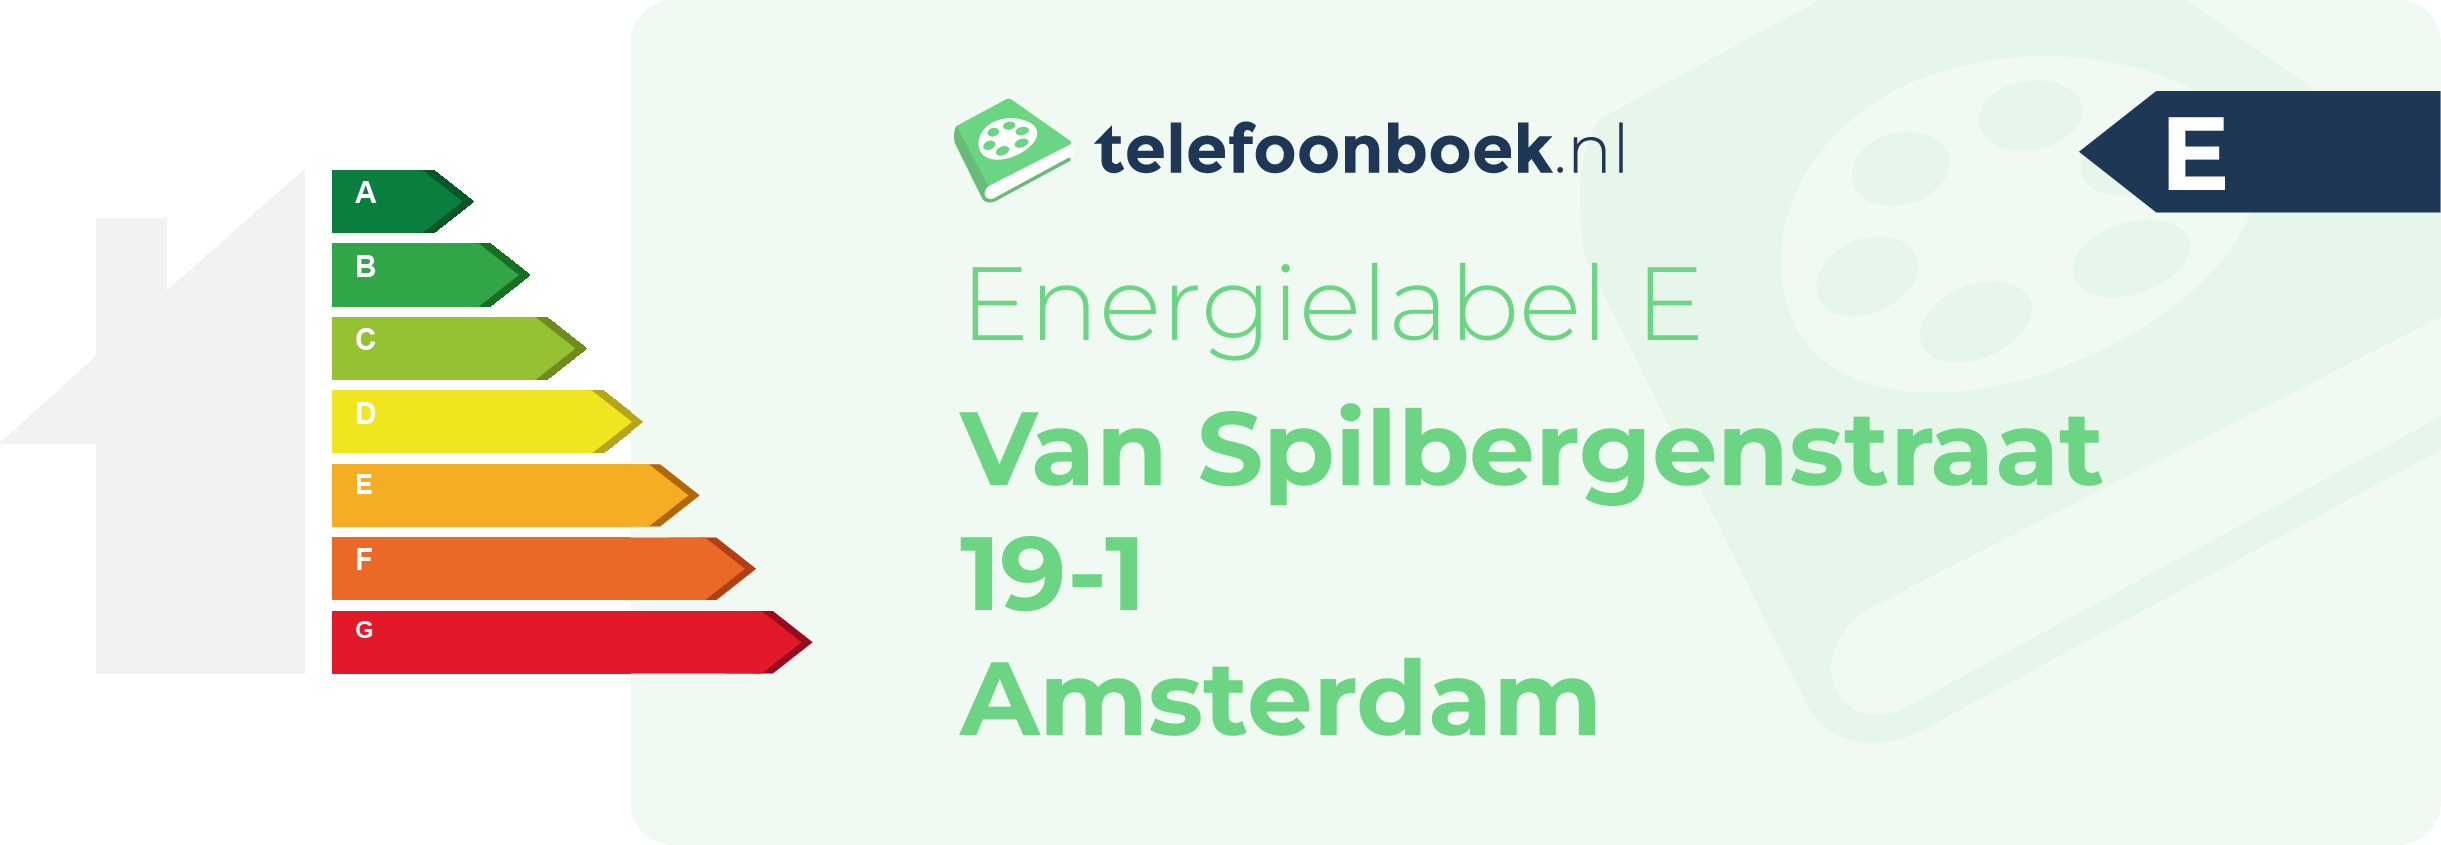 Energielabel Van Spilbergenstraat 19-1 Amsterdam